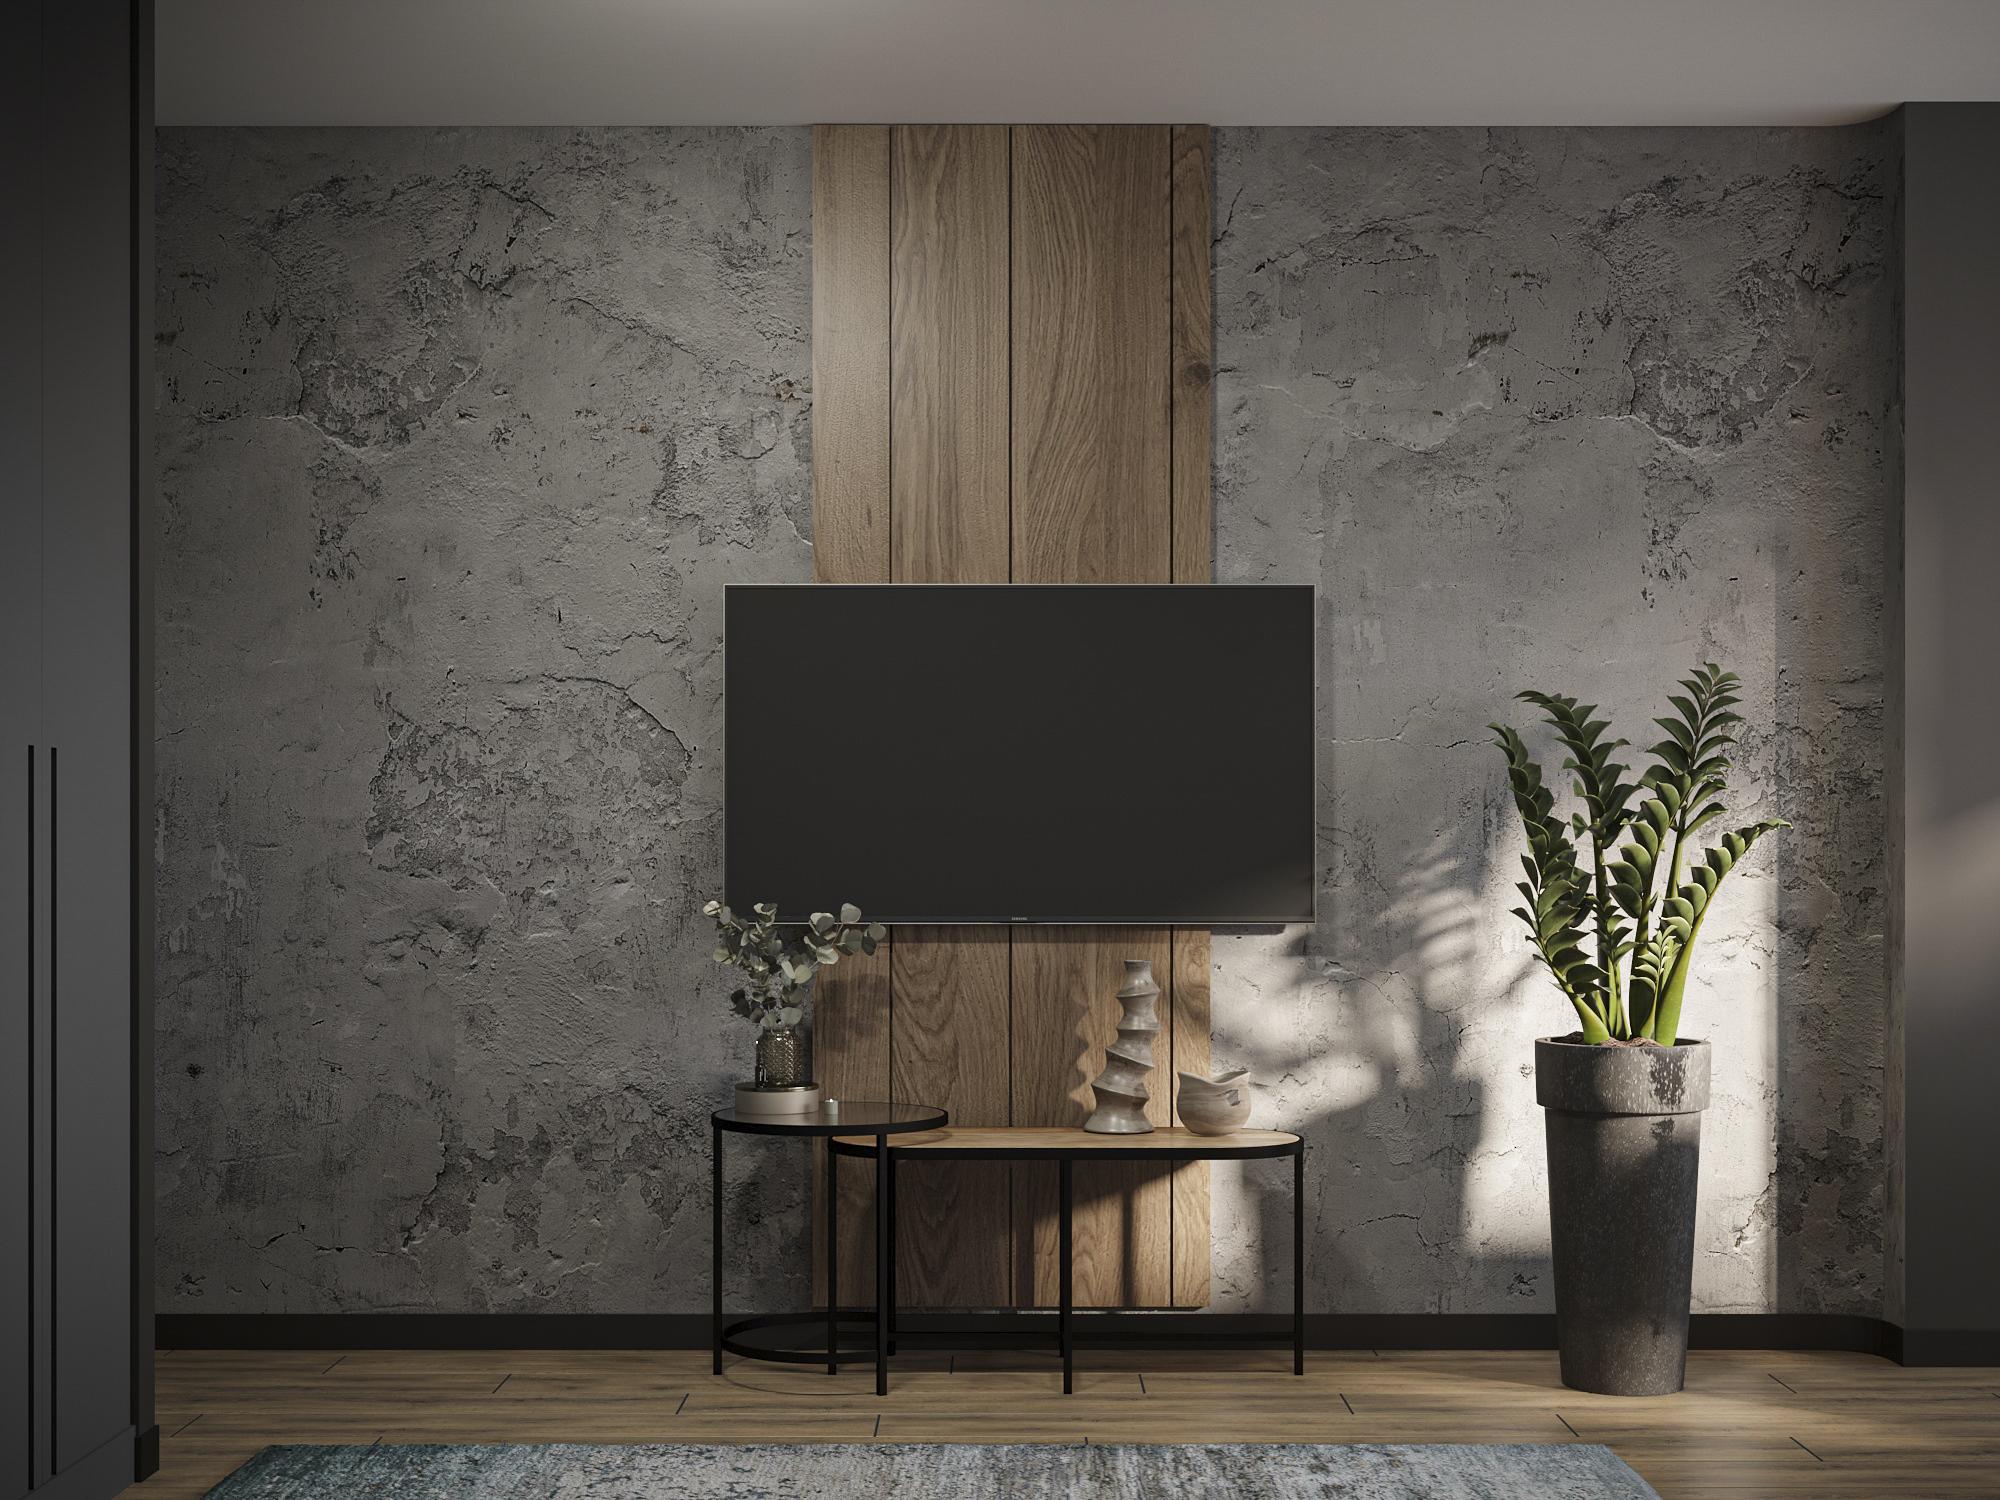 Интерьер cтеной с телевизором, телевизором на рейках, телевизором на стене и керамогранитом на стену с телевизором